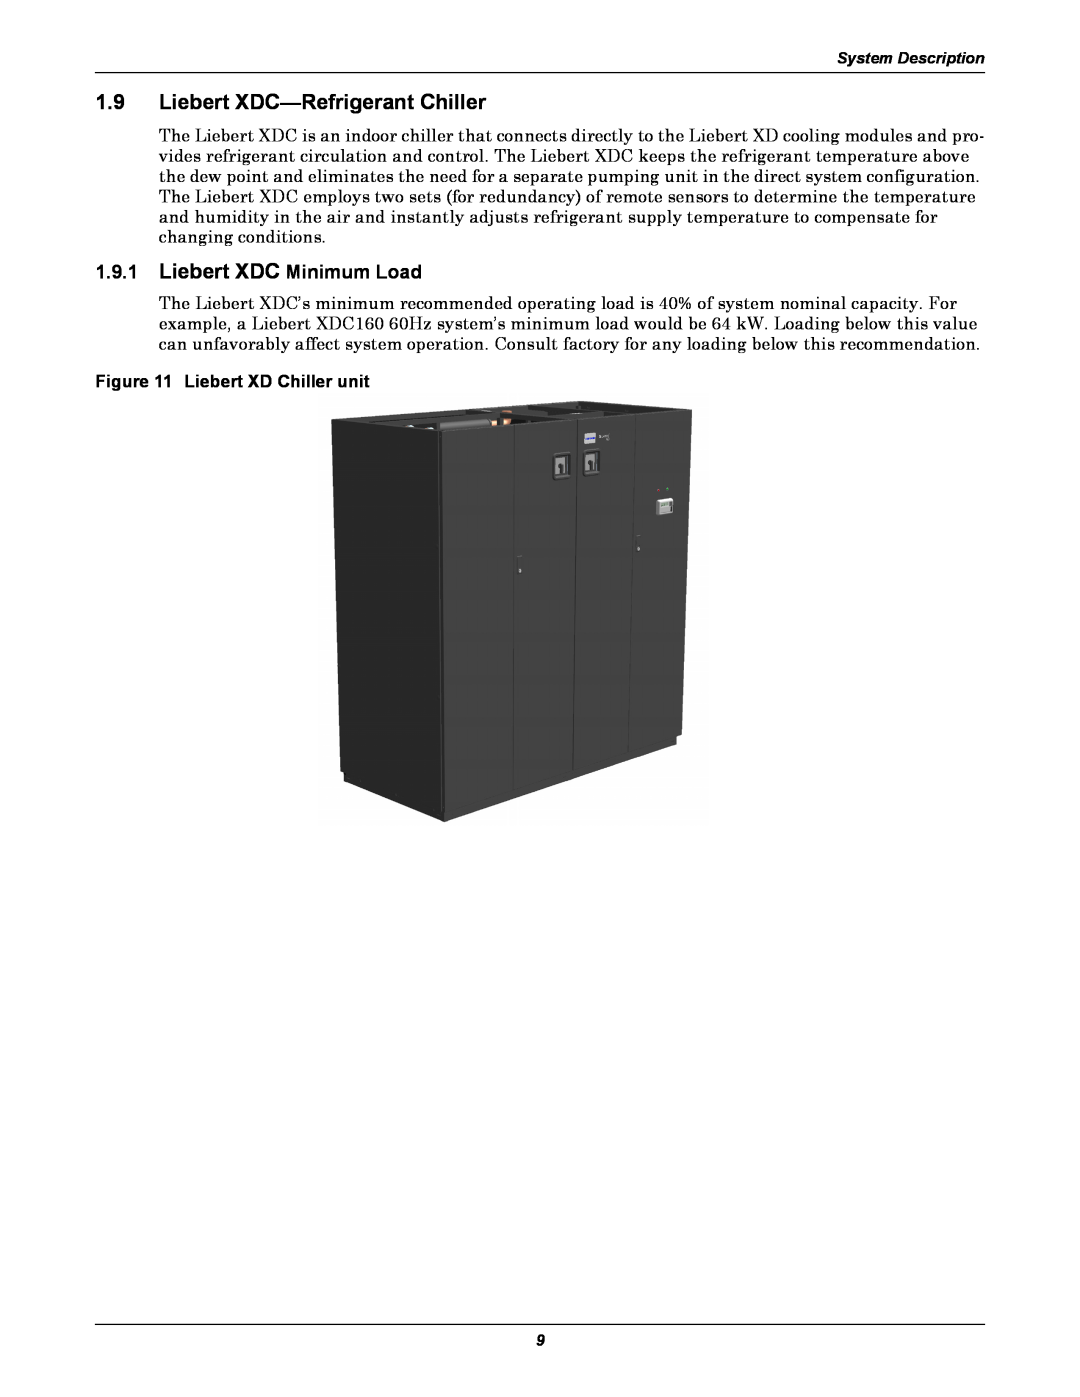 Emerson Xtreme Density manual Liebert XDC-Refrigerant Chiller, Liebert XDC Minimum Load, Liebert XD Chiller unit 